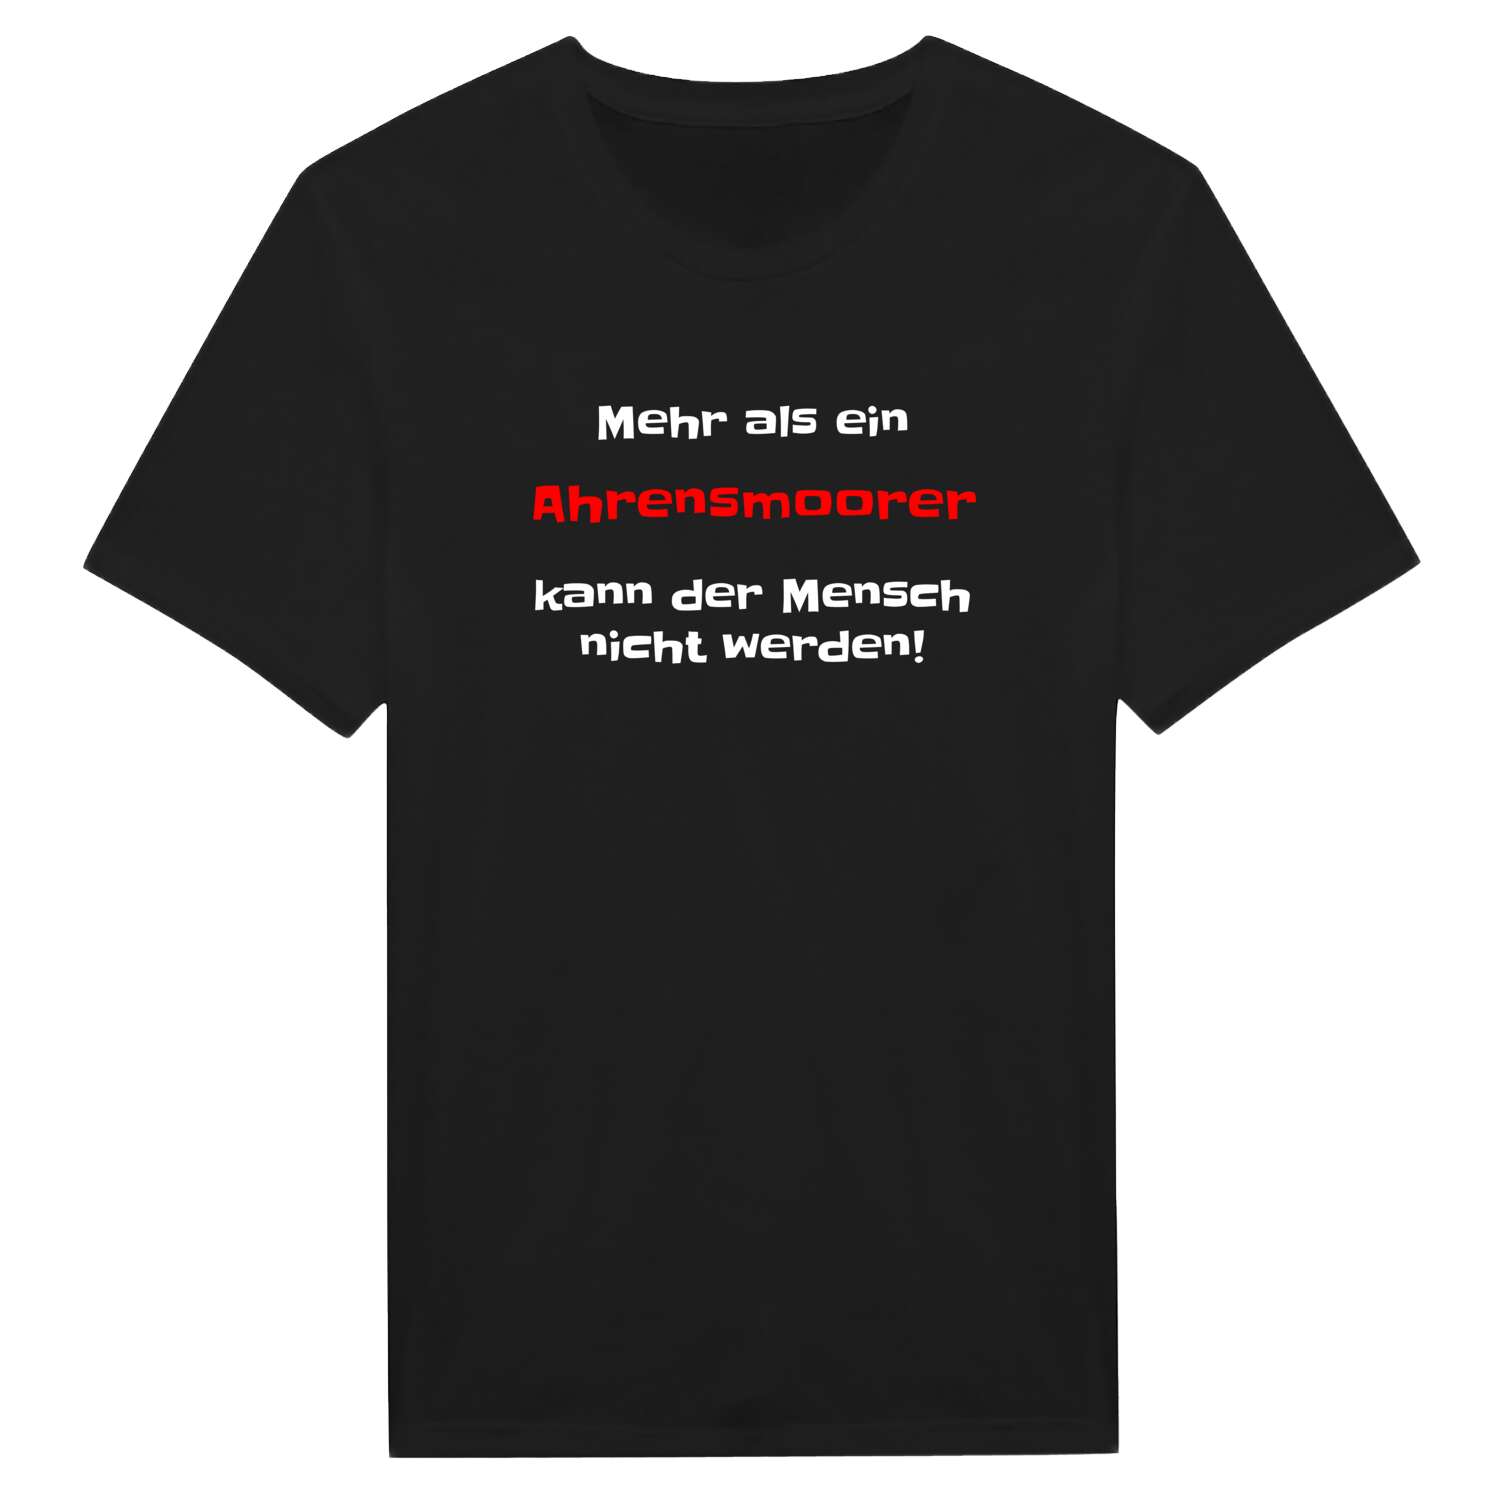 Ahrensmoor T-Shirt »Mehr als ein«